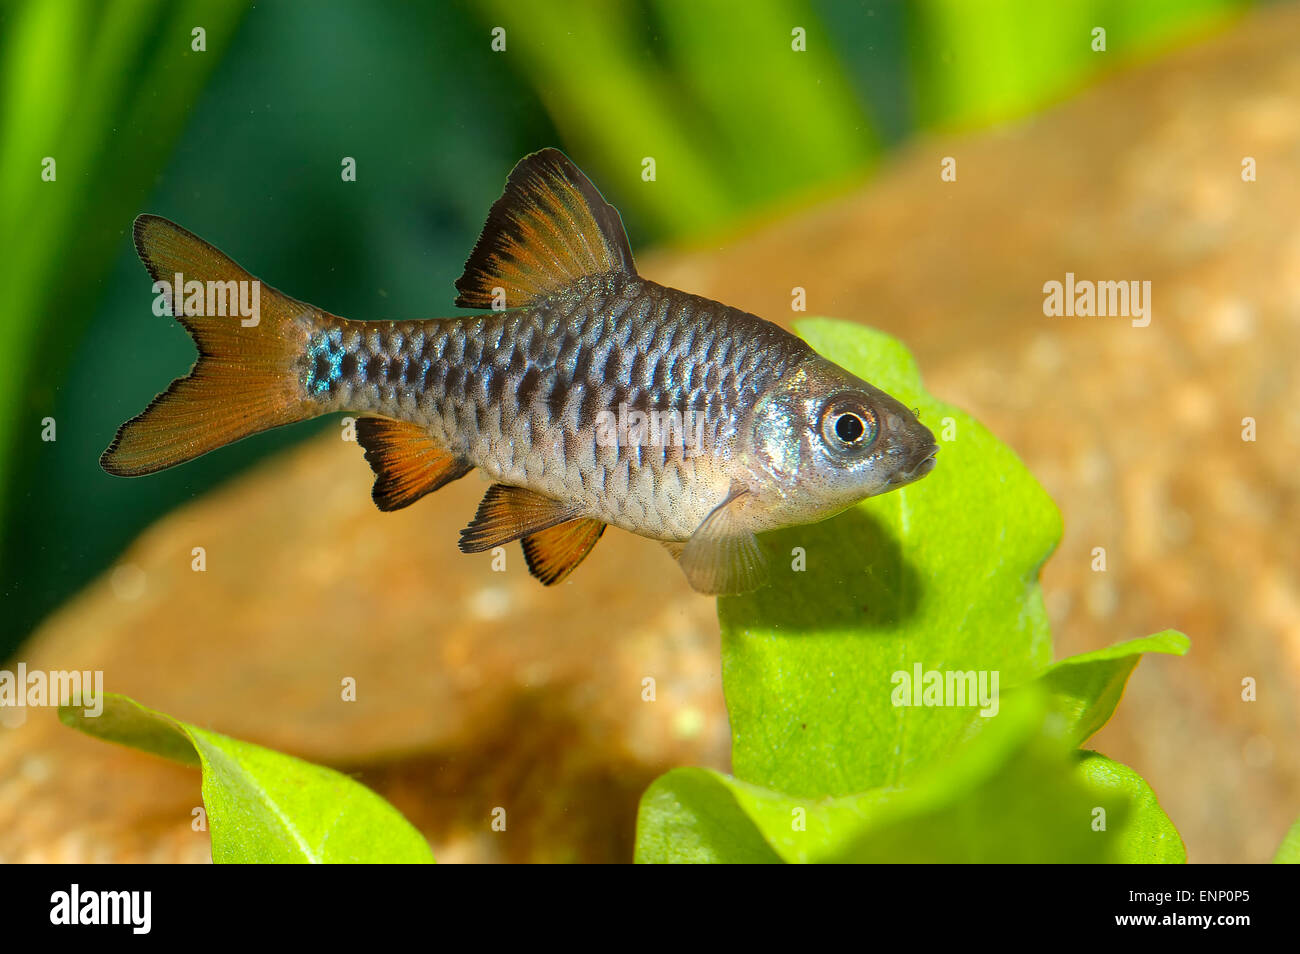 Nice aquarium fish from genus Puntius. Stock Photo